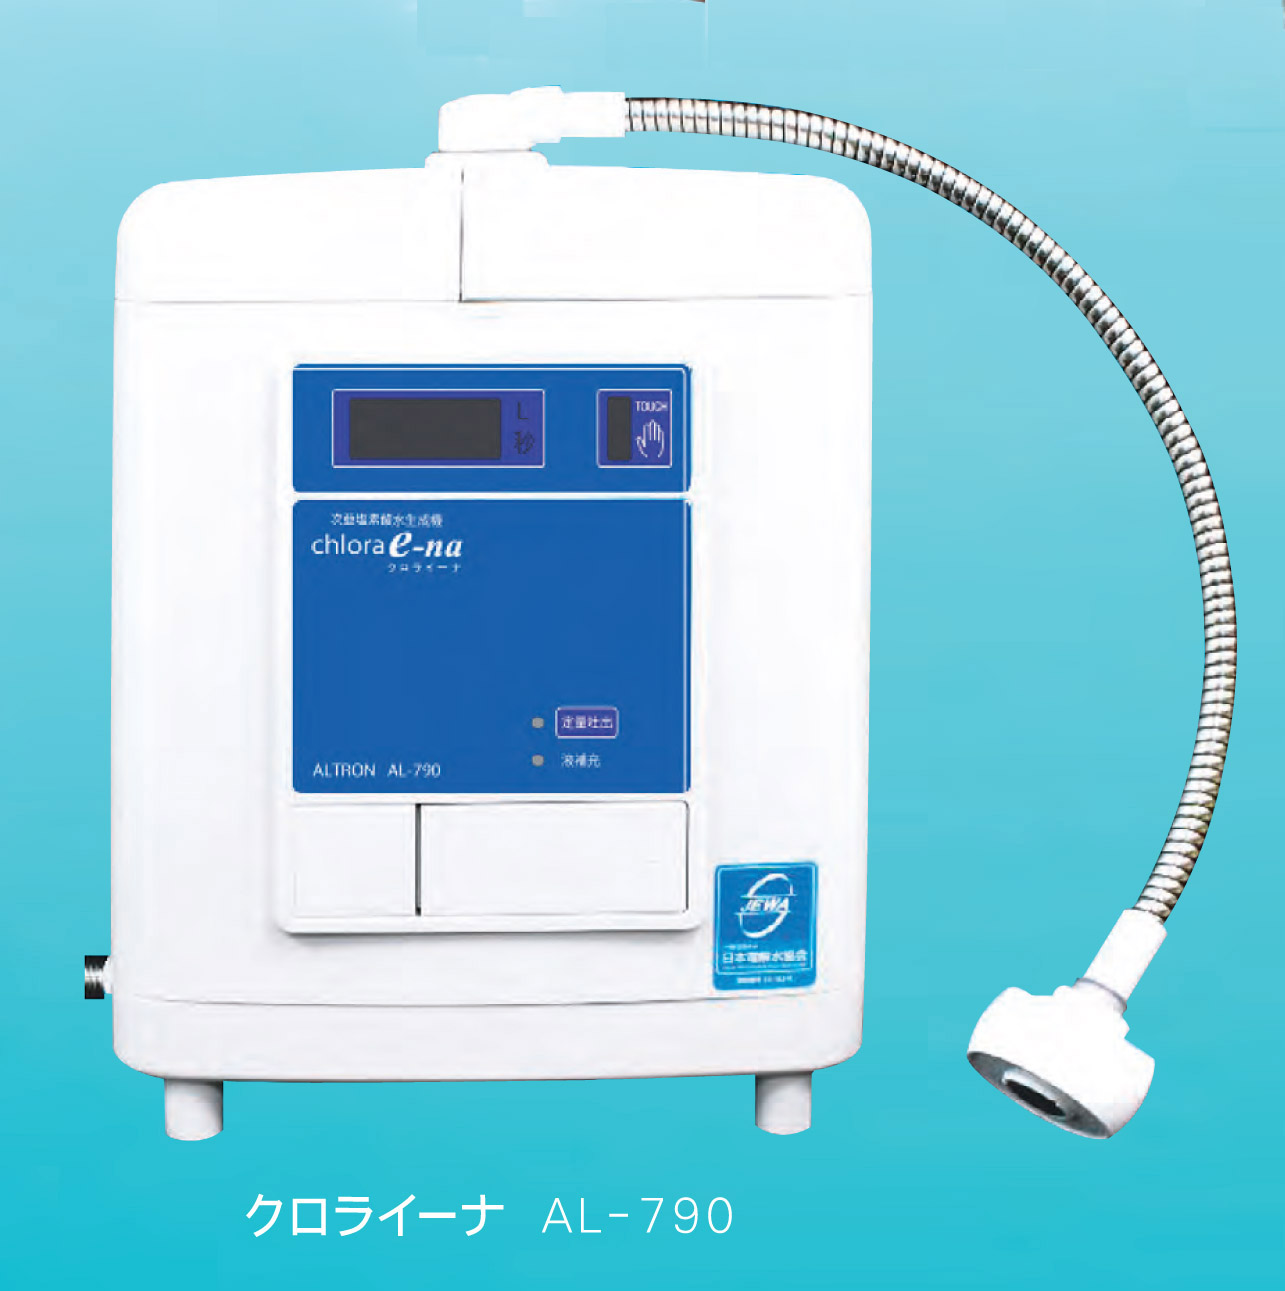 微酸性水生成器 微酸性水生成装置 クロライーナAL-790日本製 新型コロナウイルス消毒に期待されています